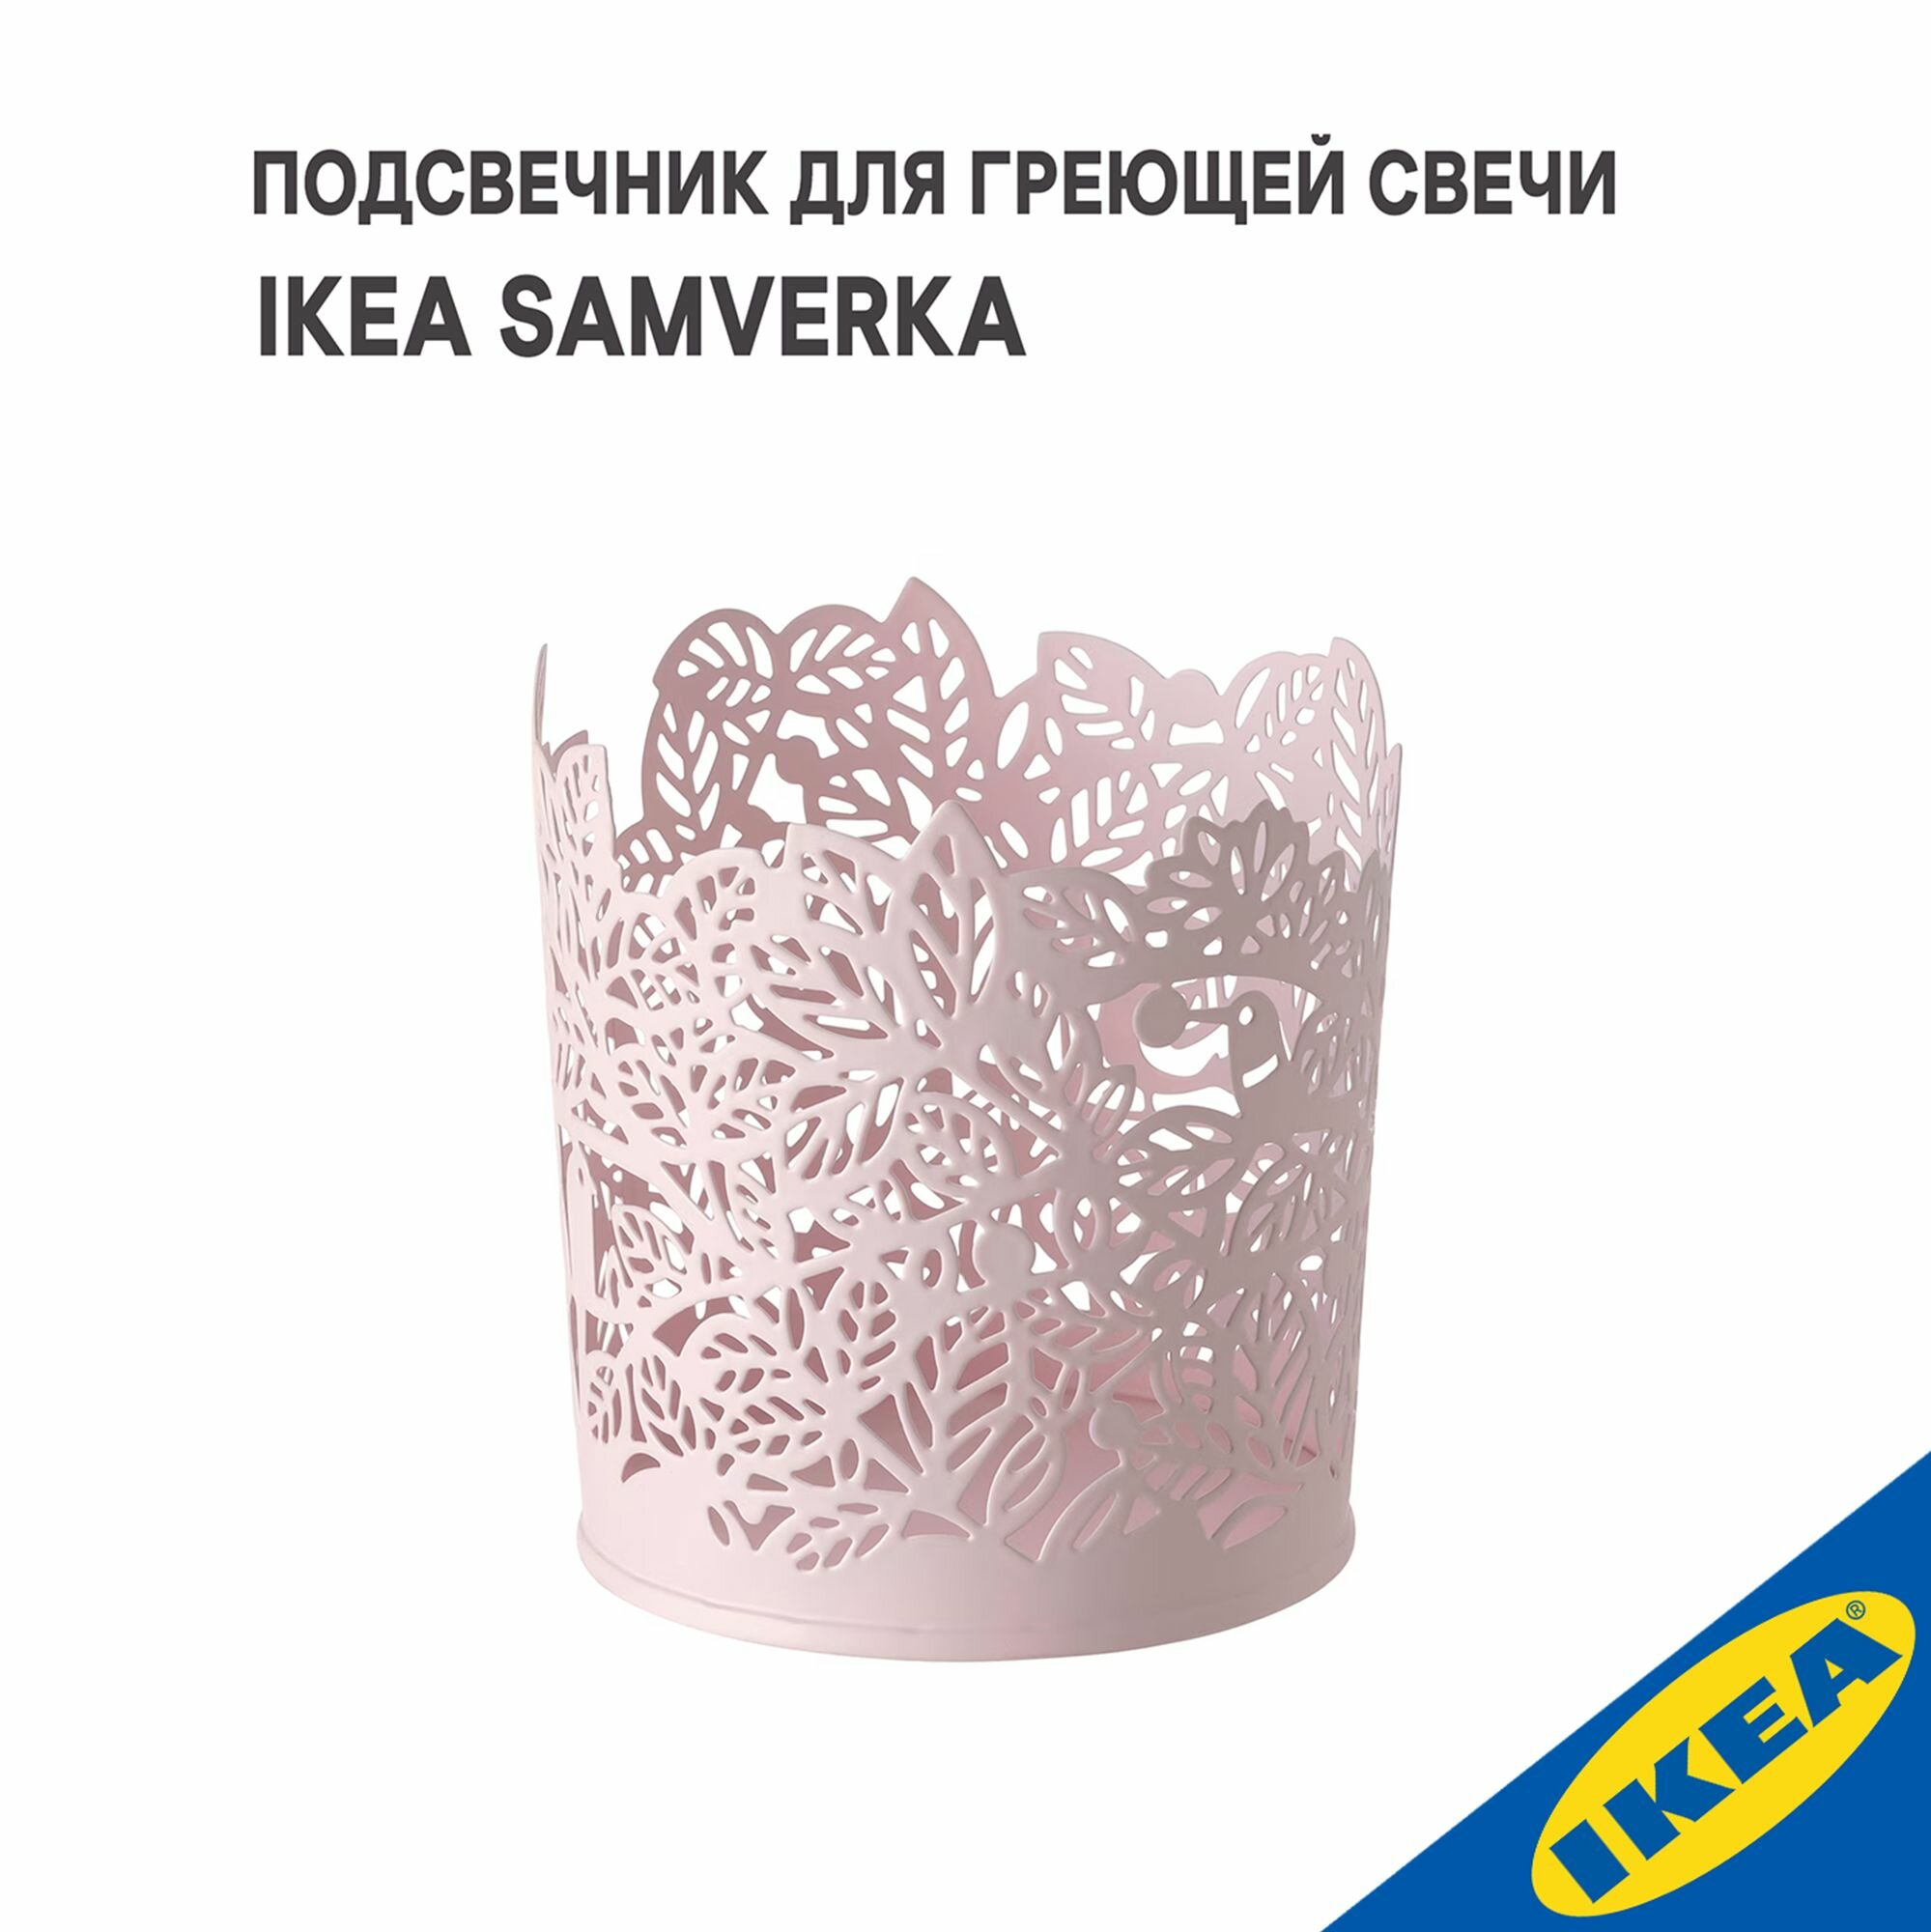 Подсвечник для греющей свечи IKEA SAMVERKA самверка 8 см бледно-розовый